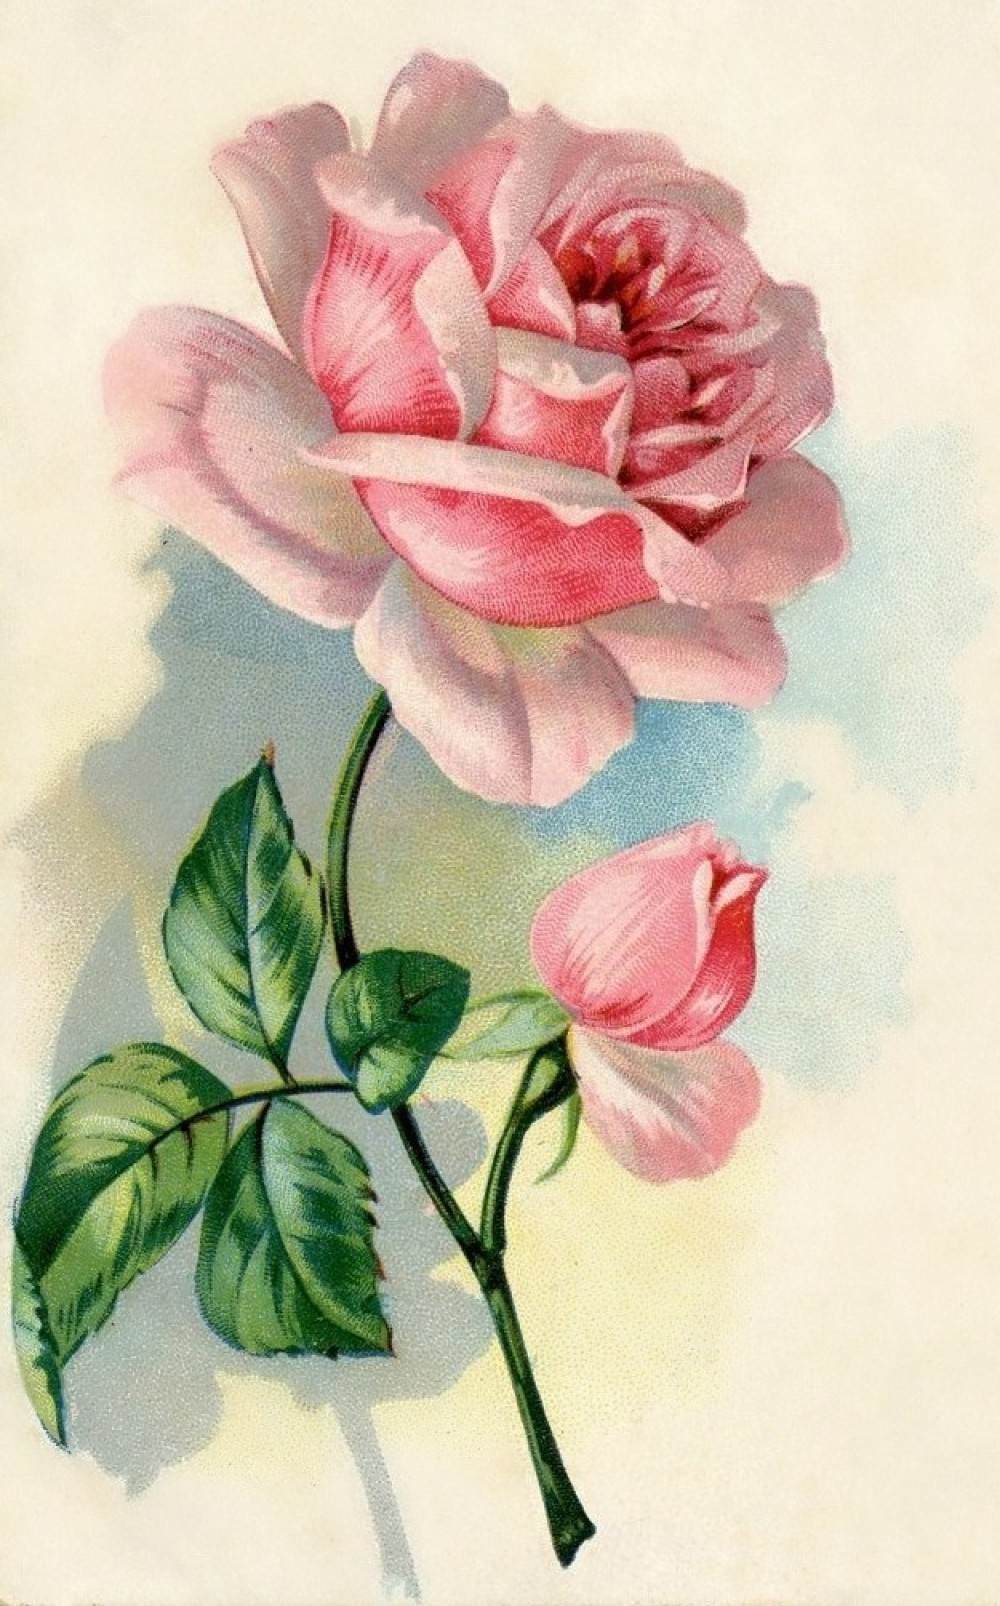 插画手绘碎花花植物玫瑰手机壁纸水粉画水彩复古水粉画花水粉画花朵